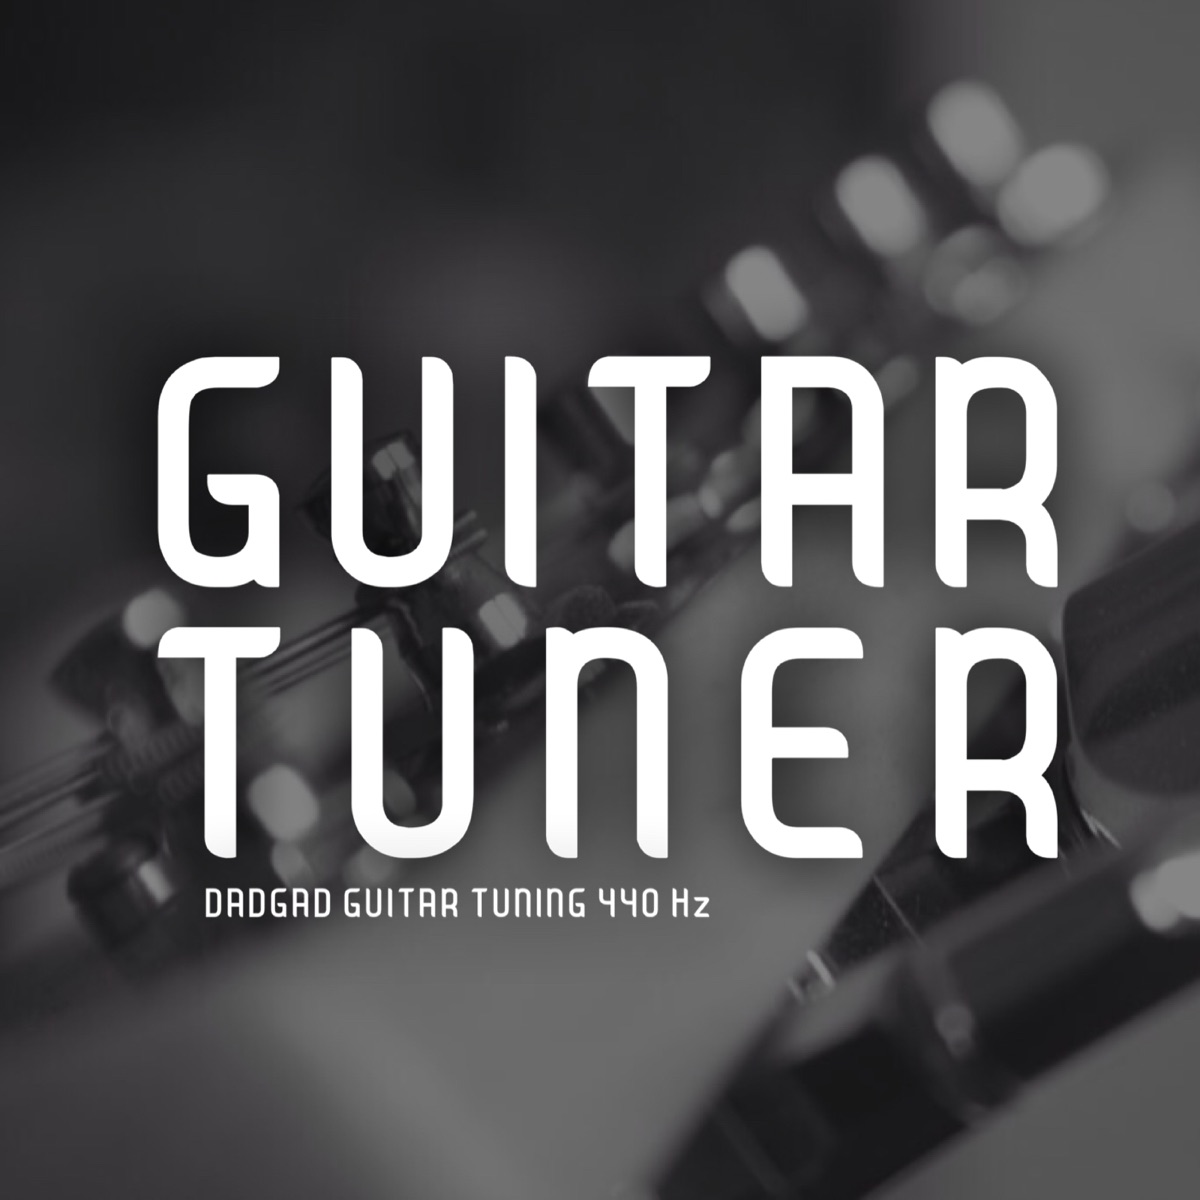 guitar tuner 440 hz